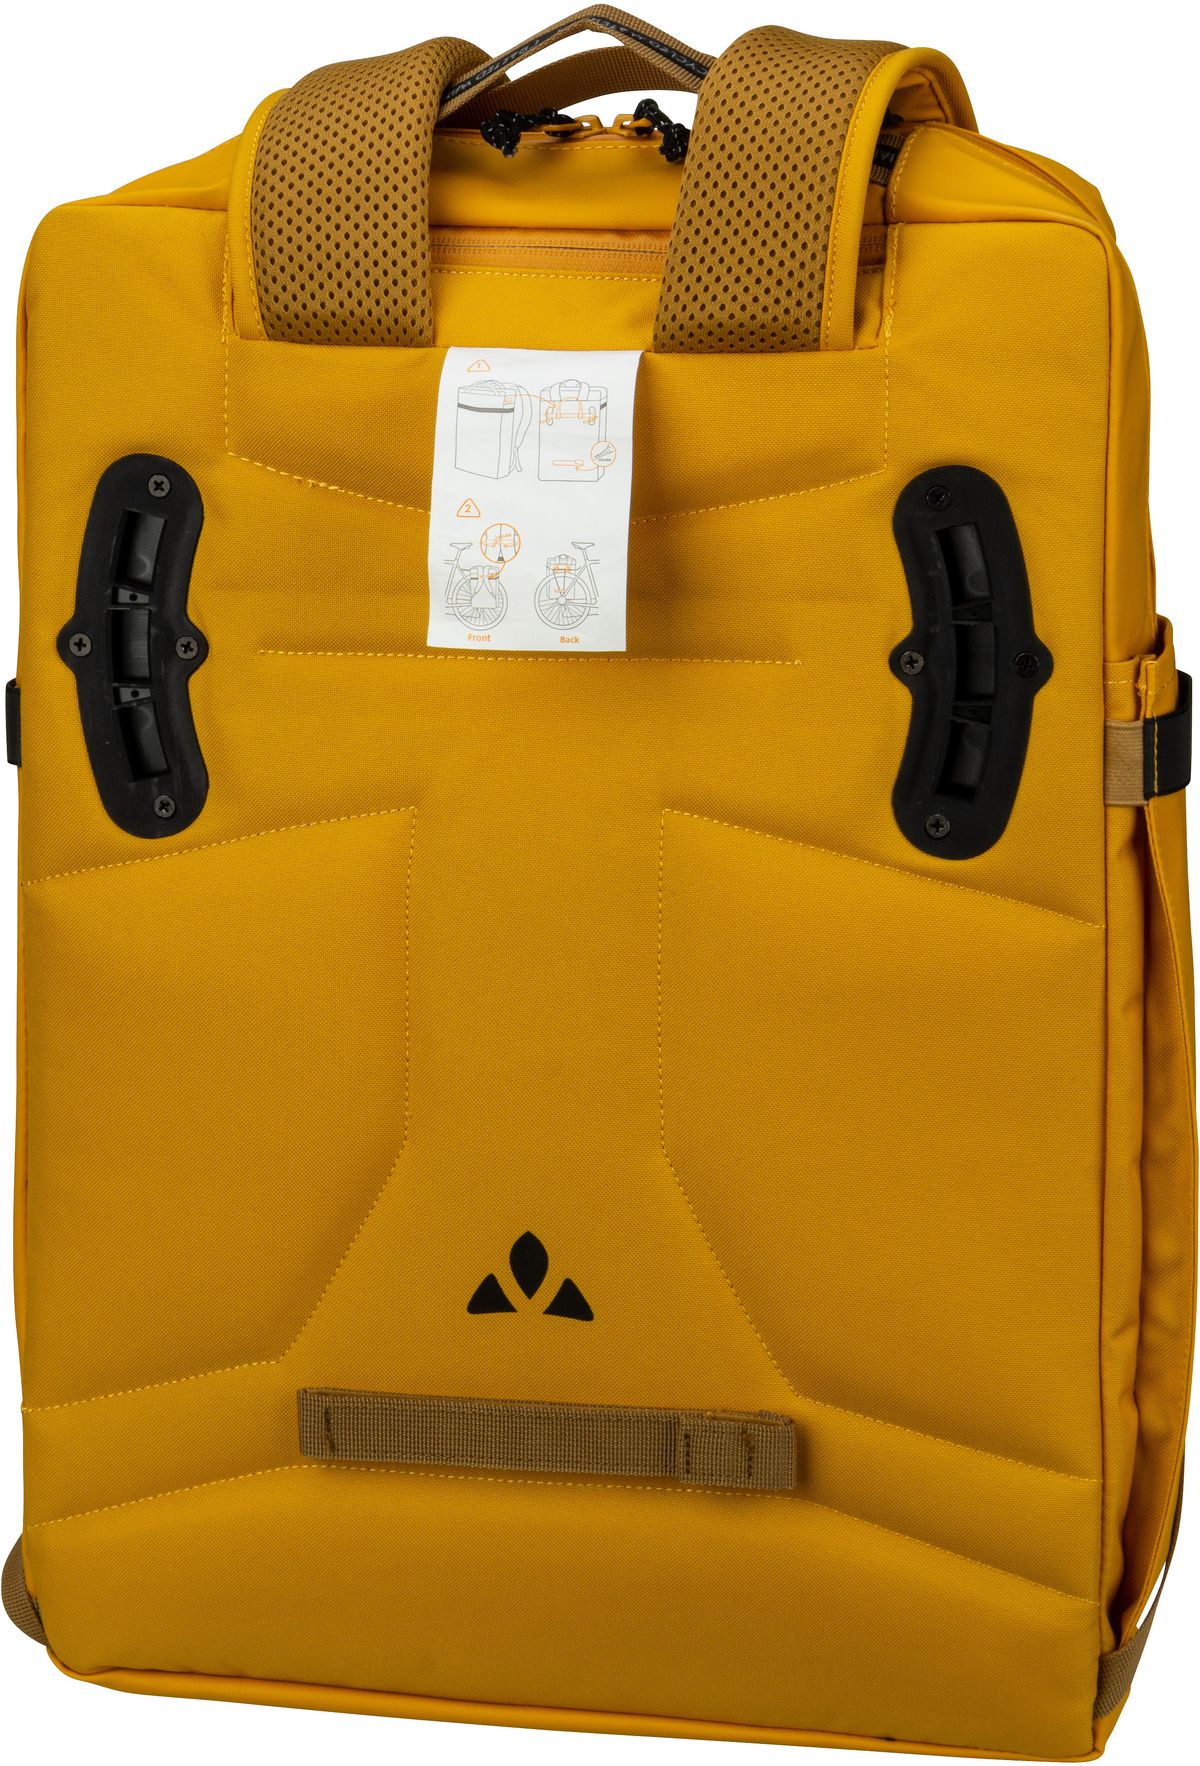 Vaude  Mineo Transformer Backpack 20 - 2in1 Fahrradtaschen-Rucksack - Gelb (Burnt Yellow)